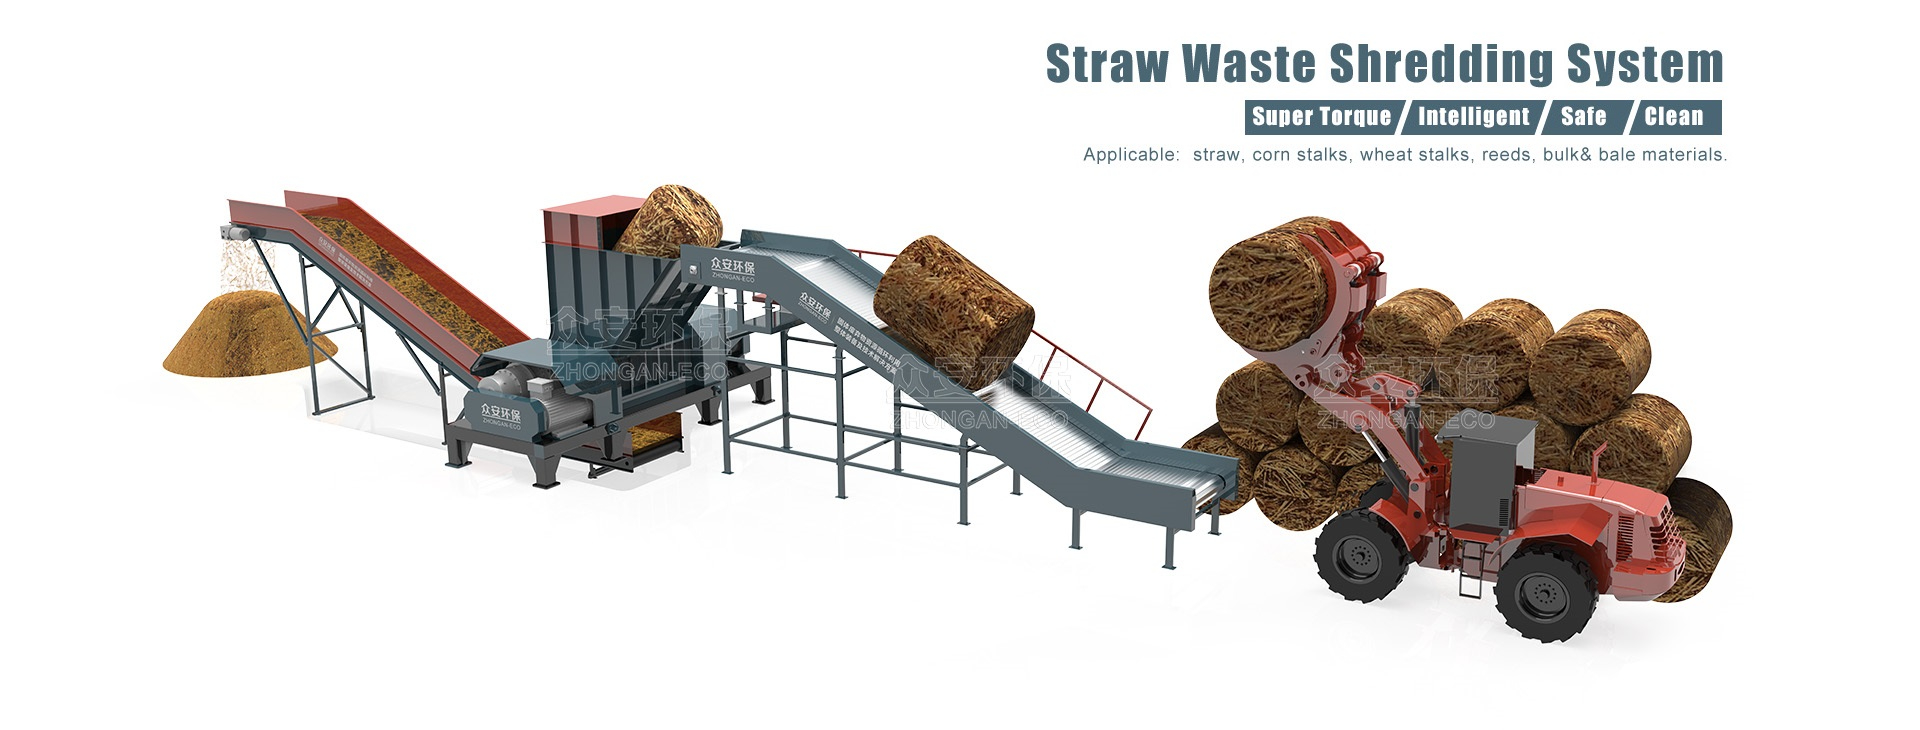 Straw Waste Shredding System